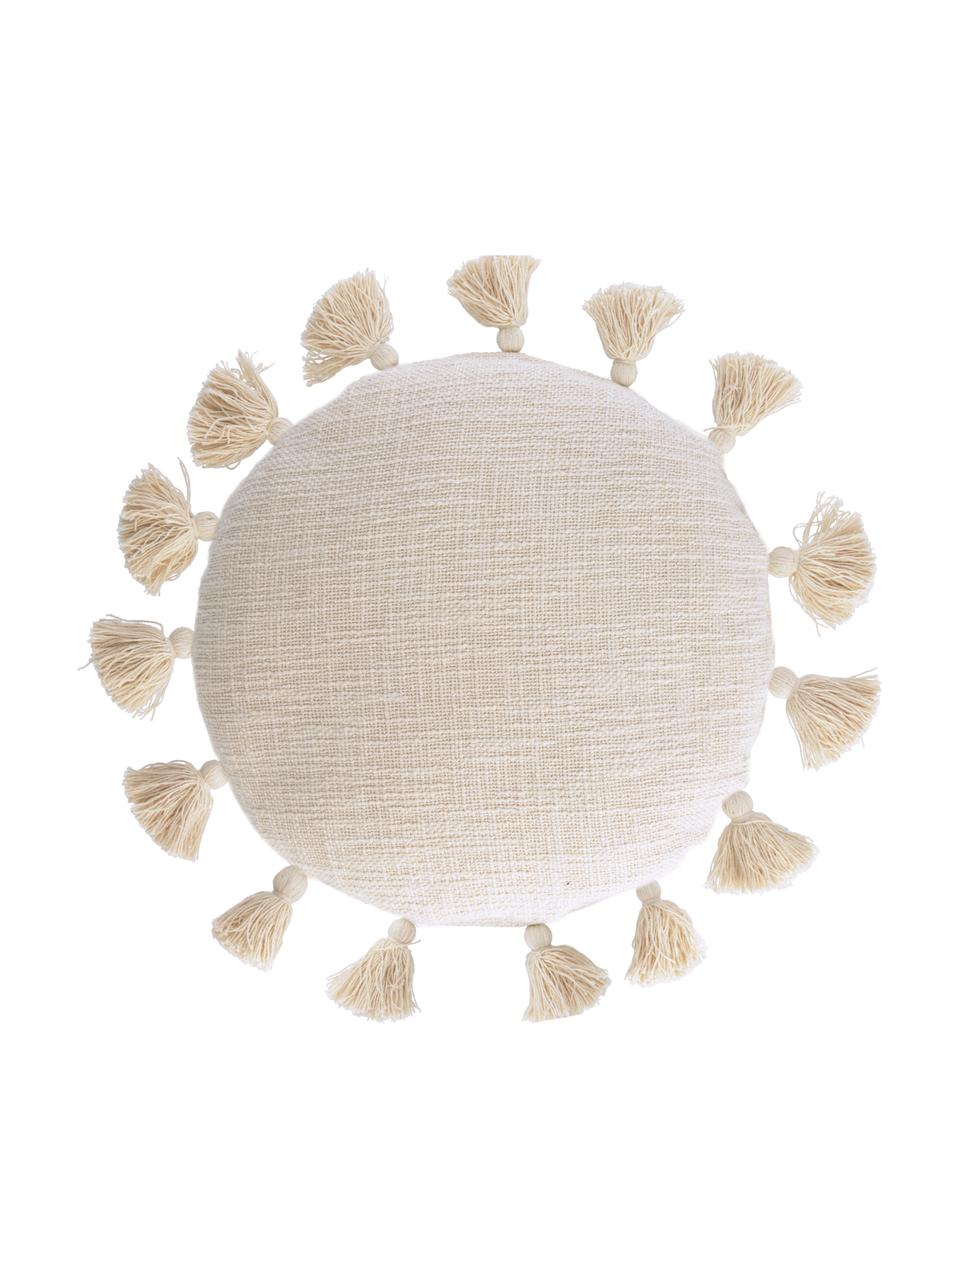 Runde Kissenhülle Chiarina mit Quasten und Strukturoberfläche, 100% Baumwolle, Beige, 45 x 45 cm